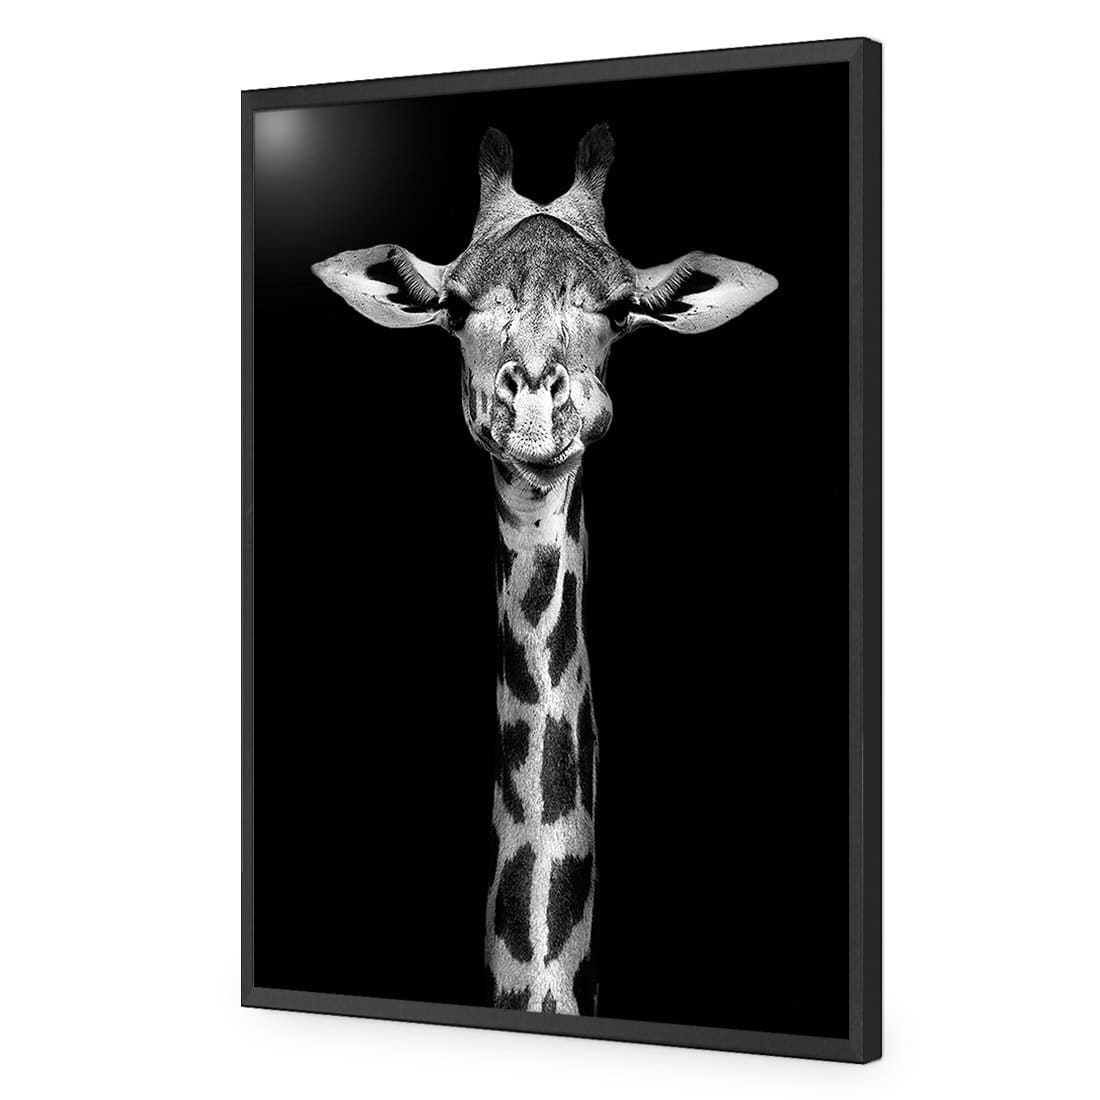 Thornycroft Giraffe-Acrylic-Wall Art Design-Without Border-Acrylic - Black Frame-45x30cm-Wall Art Designs